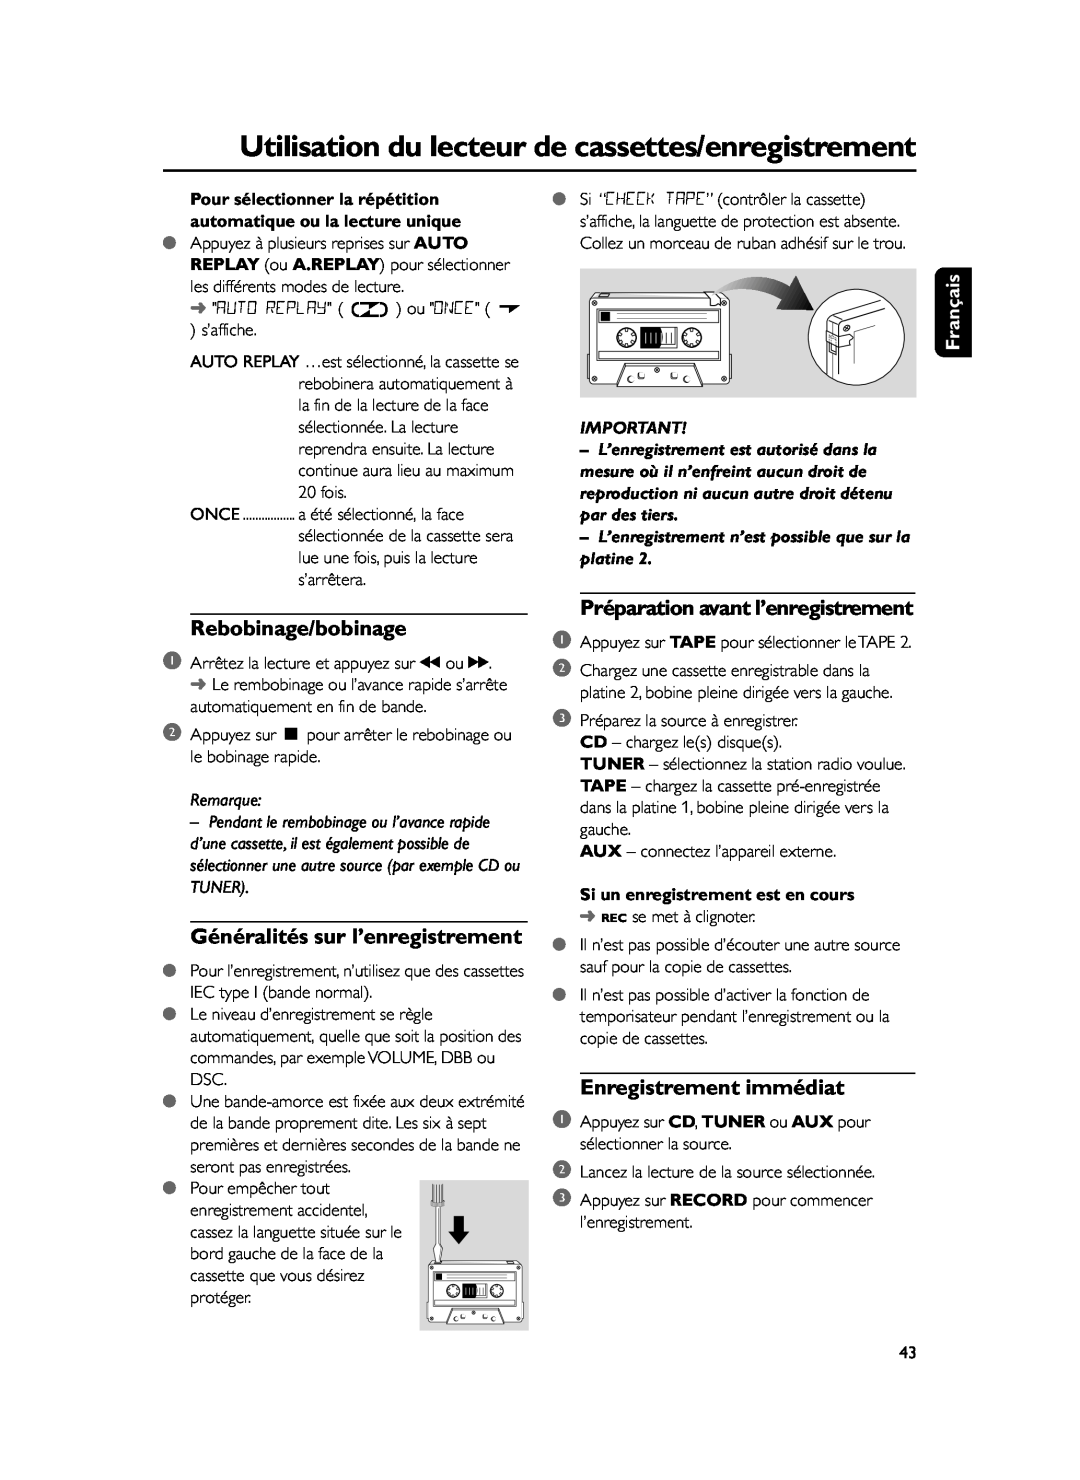 Philips FWM37 manual Rebobinage/bobinage, Généralités sur l’enregistrement, Préparation avant l’enregistrement, Français 